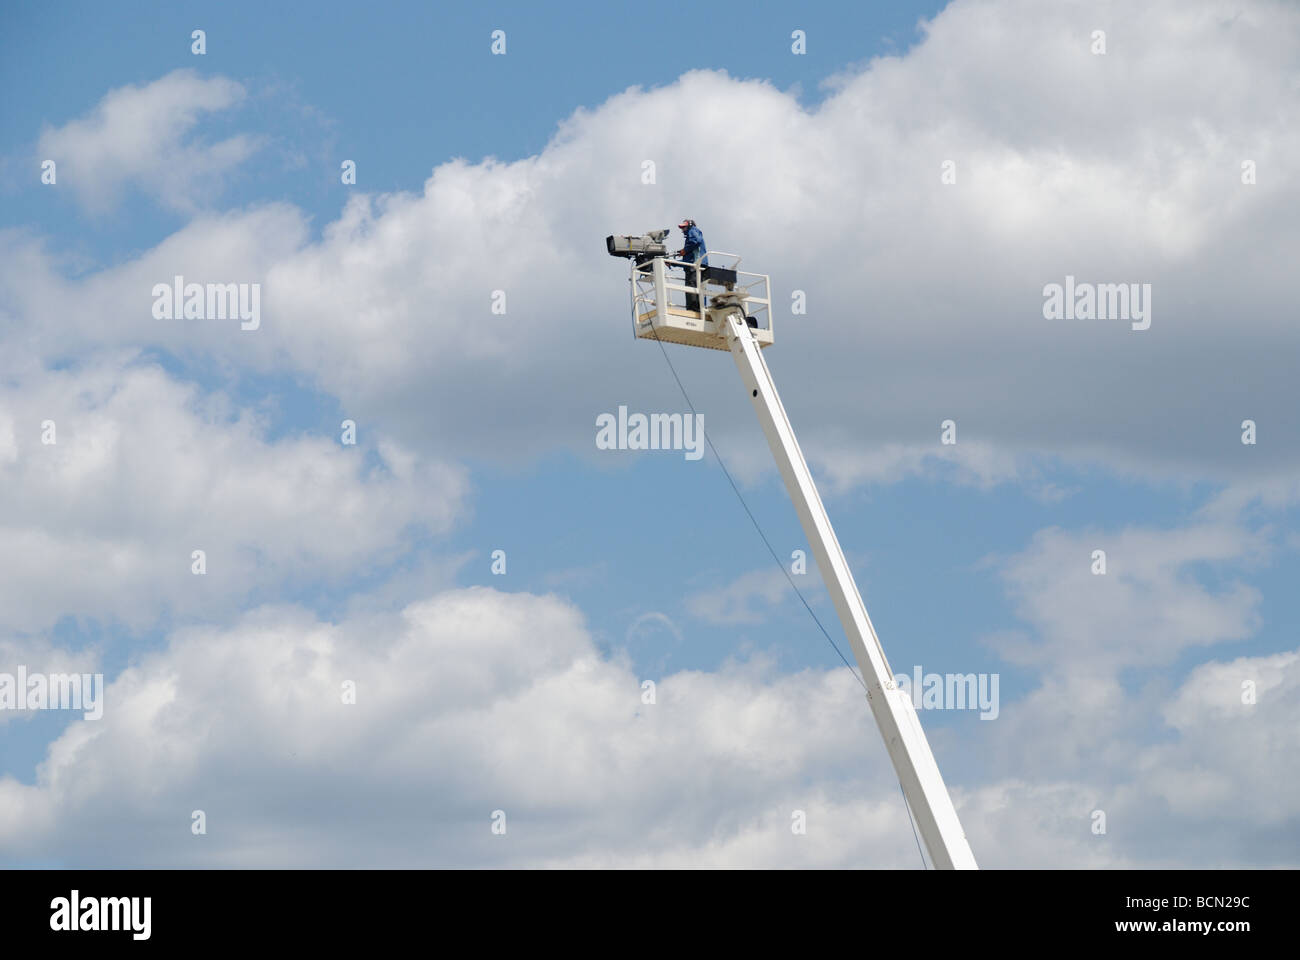 Ein TV-Kameramann auf einer erhöhten Kamera Kran bei einer Auto-Renn-Veranstaltung. Stockfoto